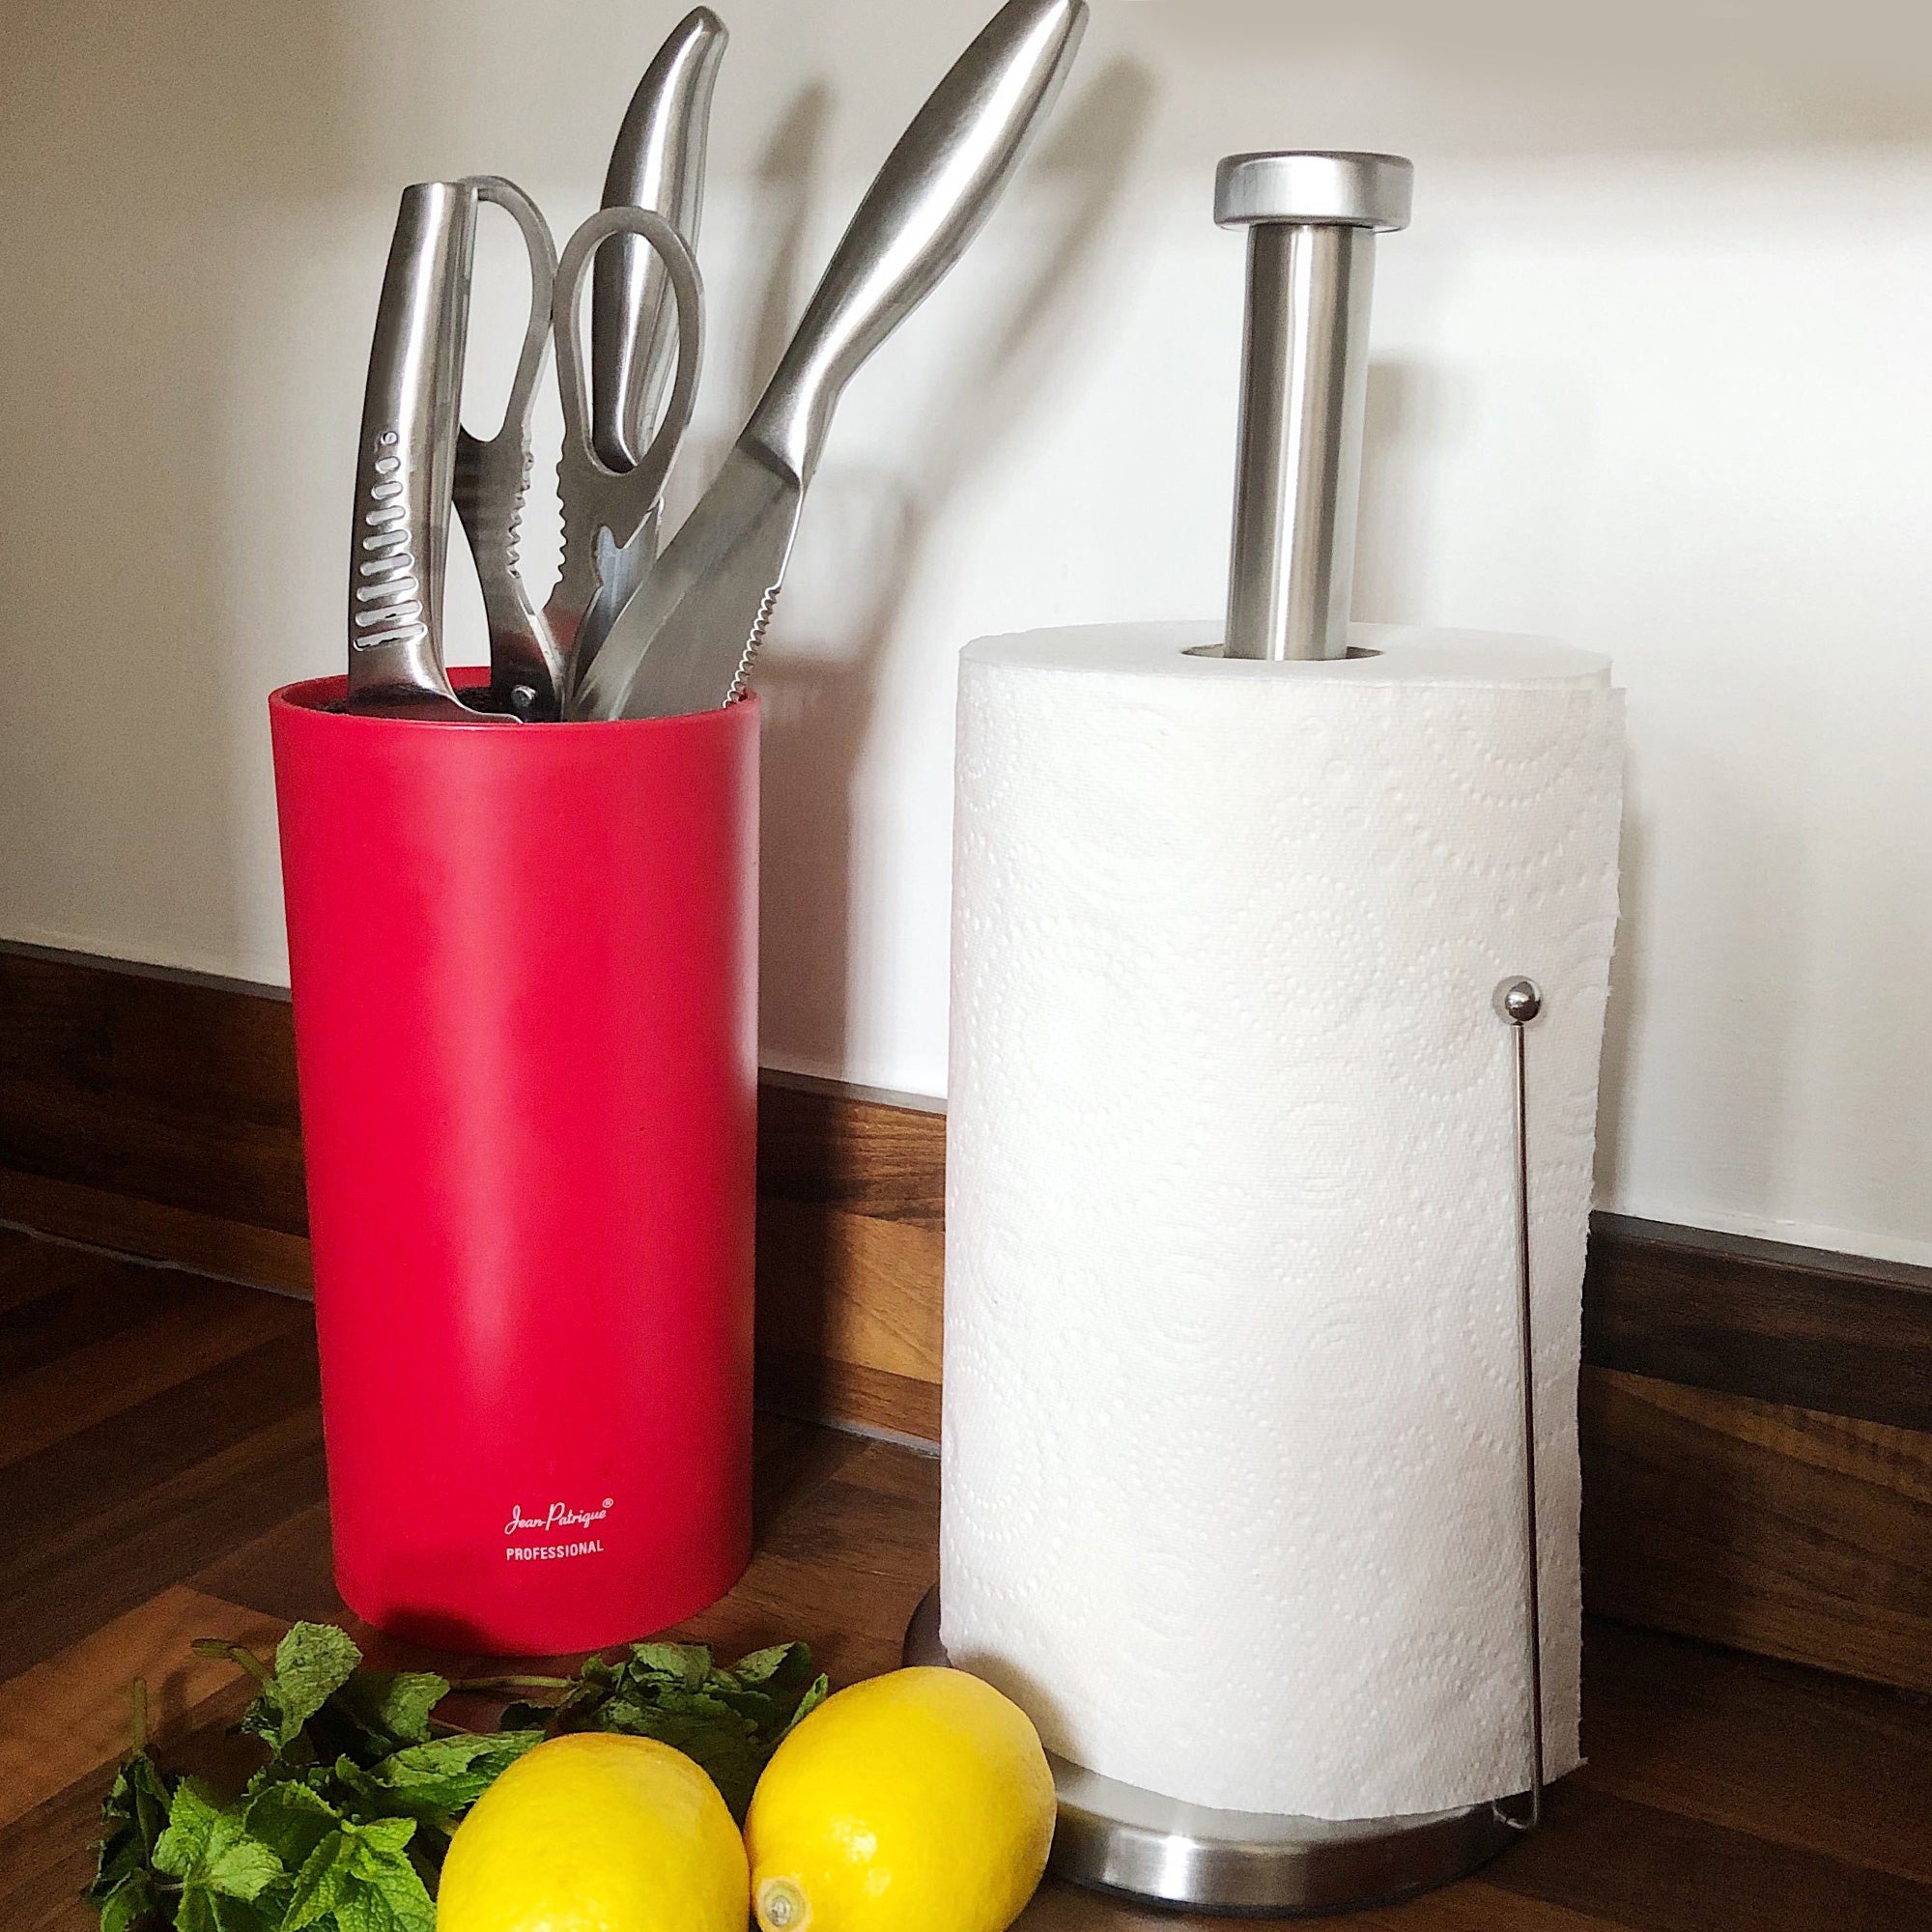 Brushed Steel Spring-Loaded Kitchen Towel Holder – Jean Patrique